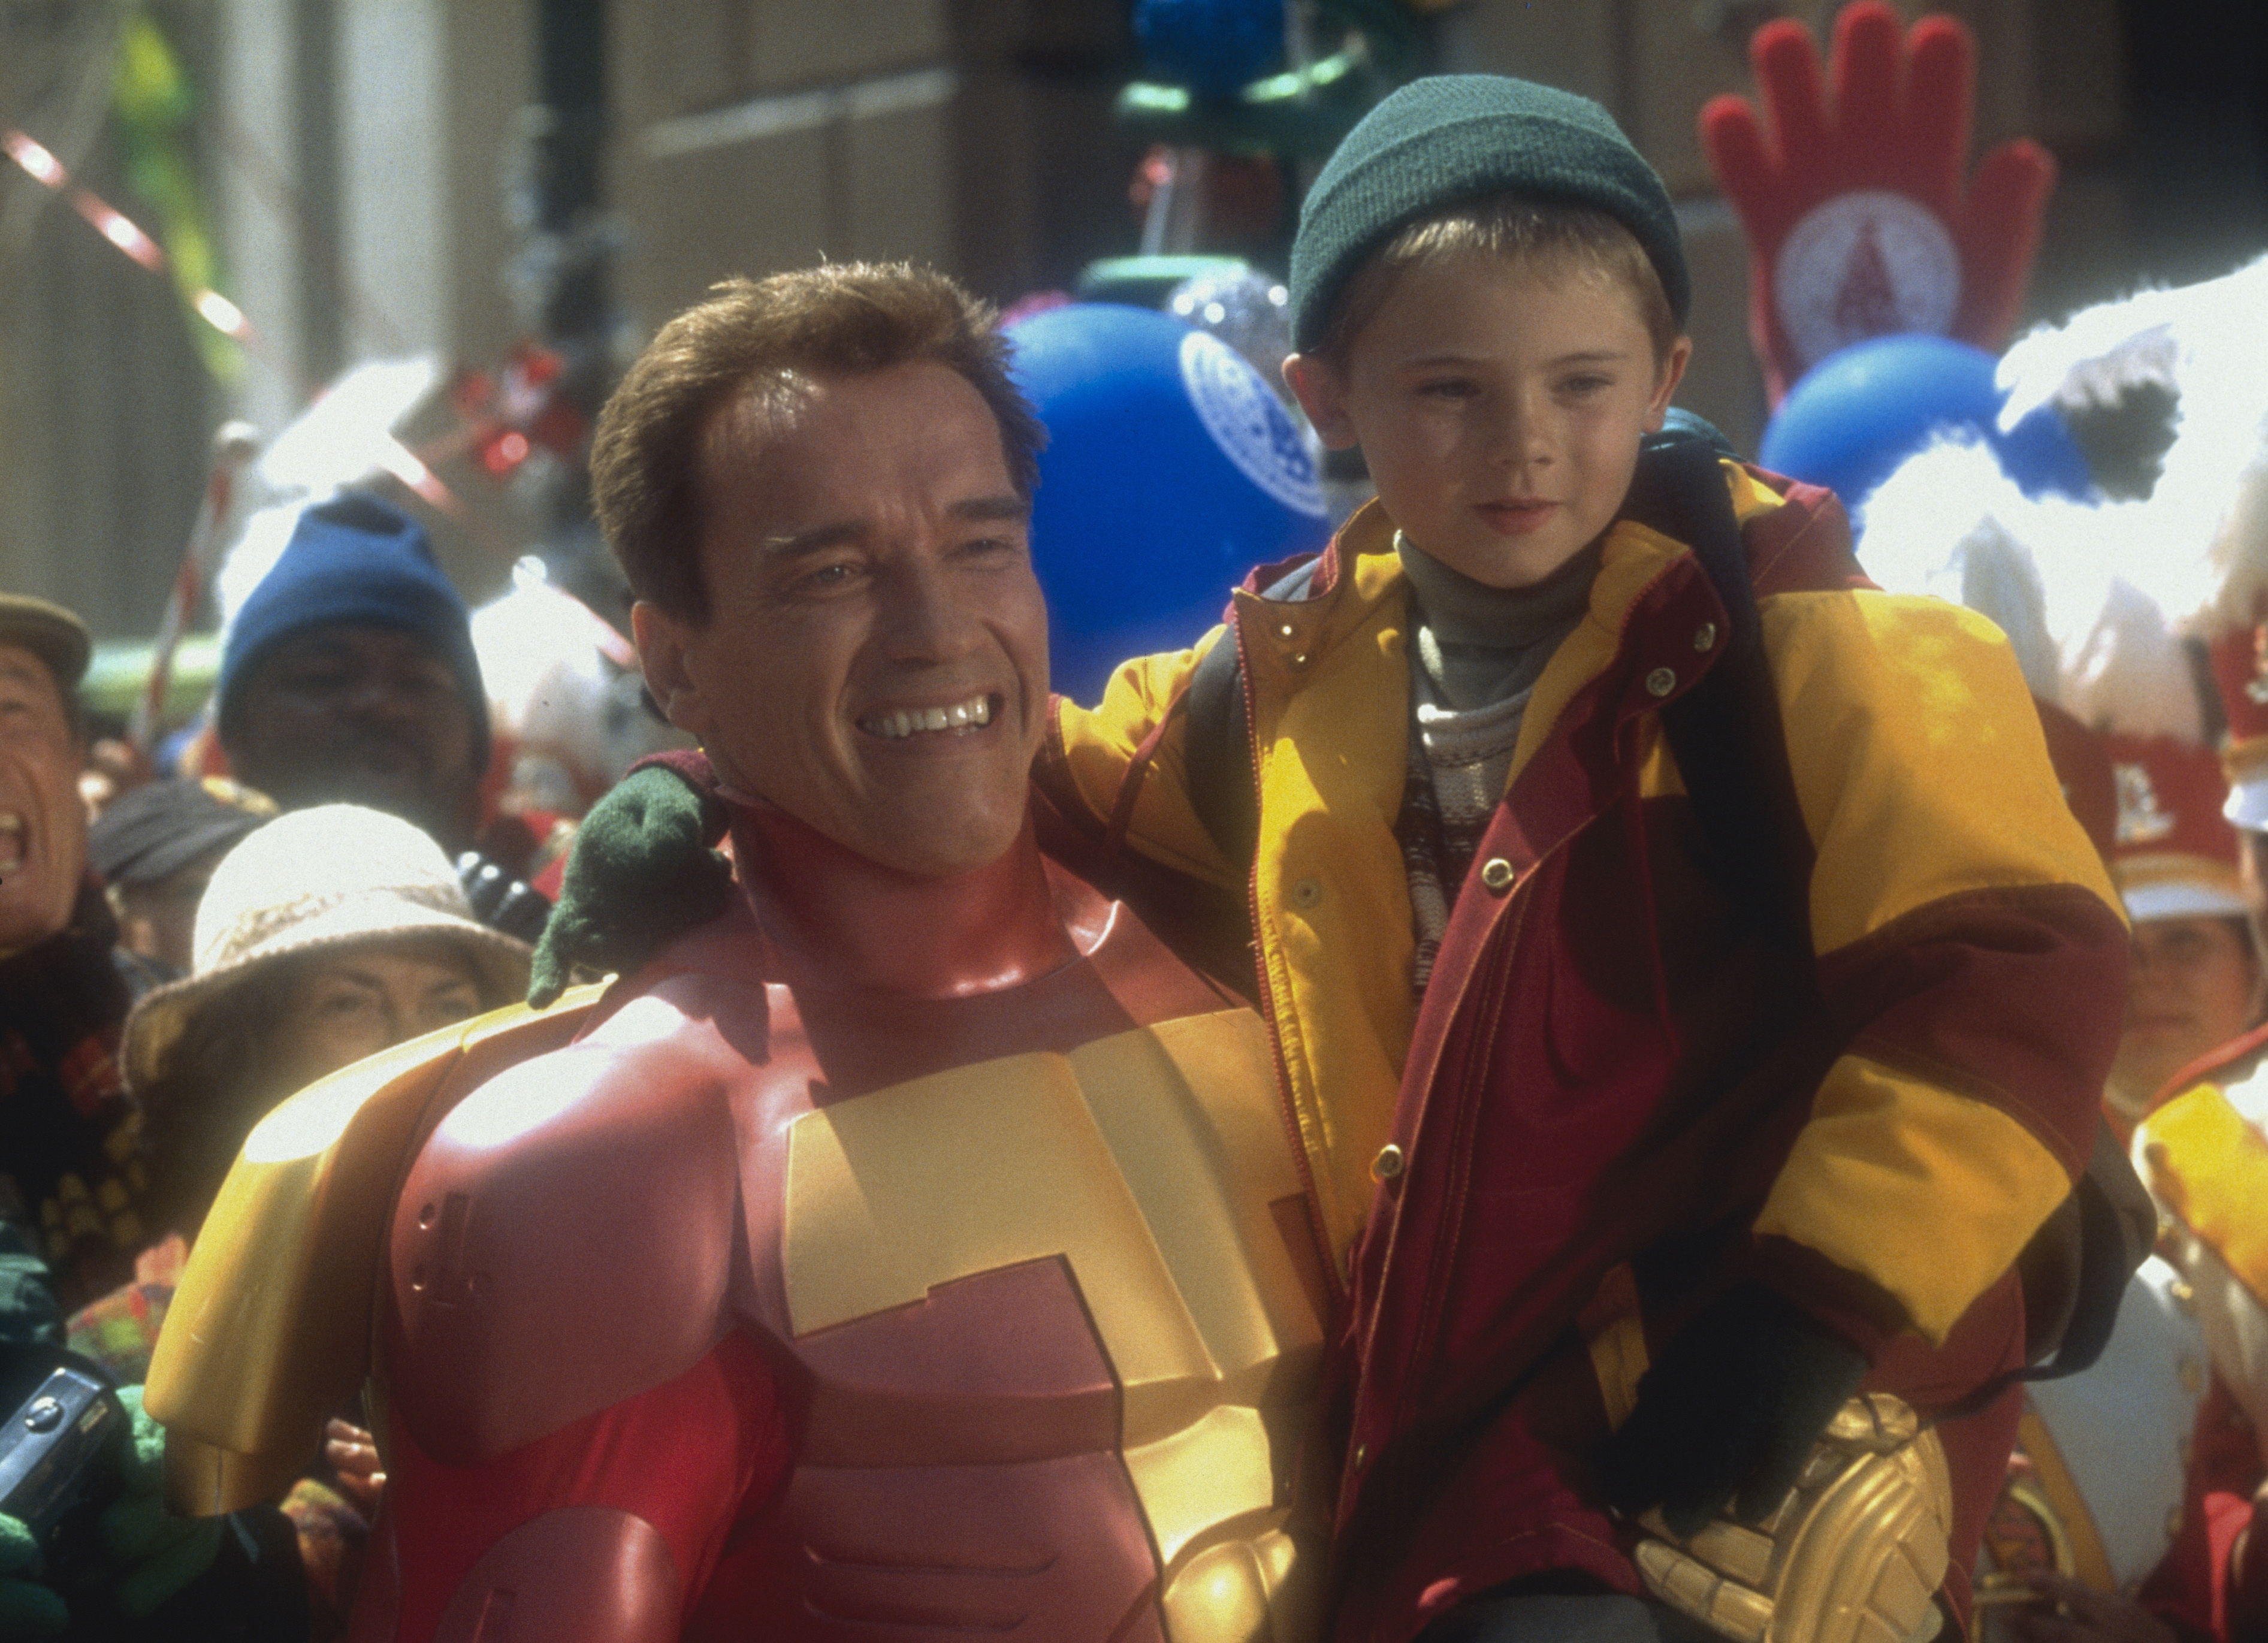 L'acteur Arnold Schwarzenegger avec l'acteur américain Jake Lloyd sur le tournage du film "Jingle All the Way", vers janvier 1996 | Source : Getty Images